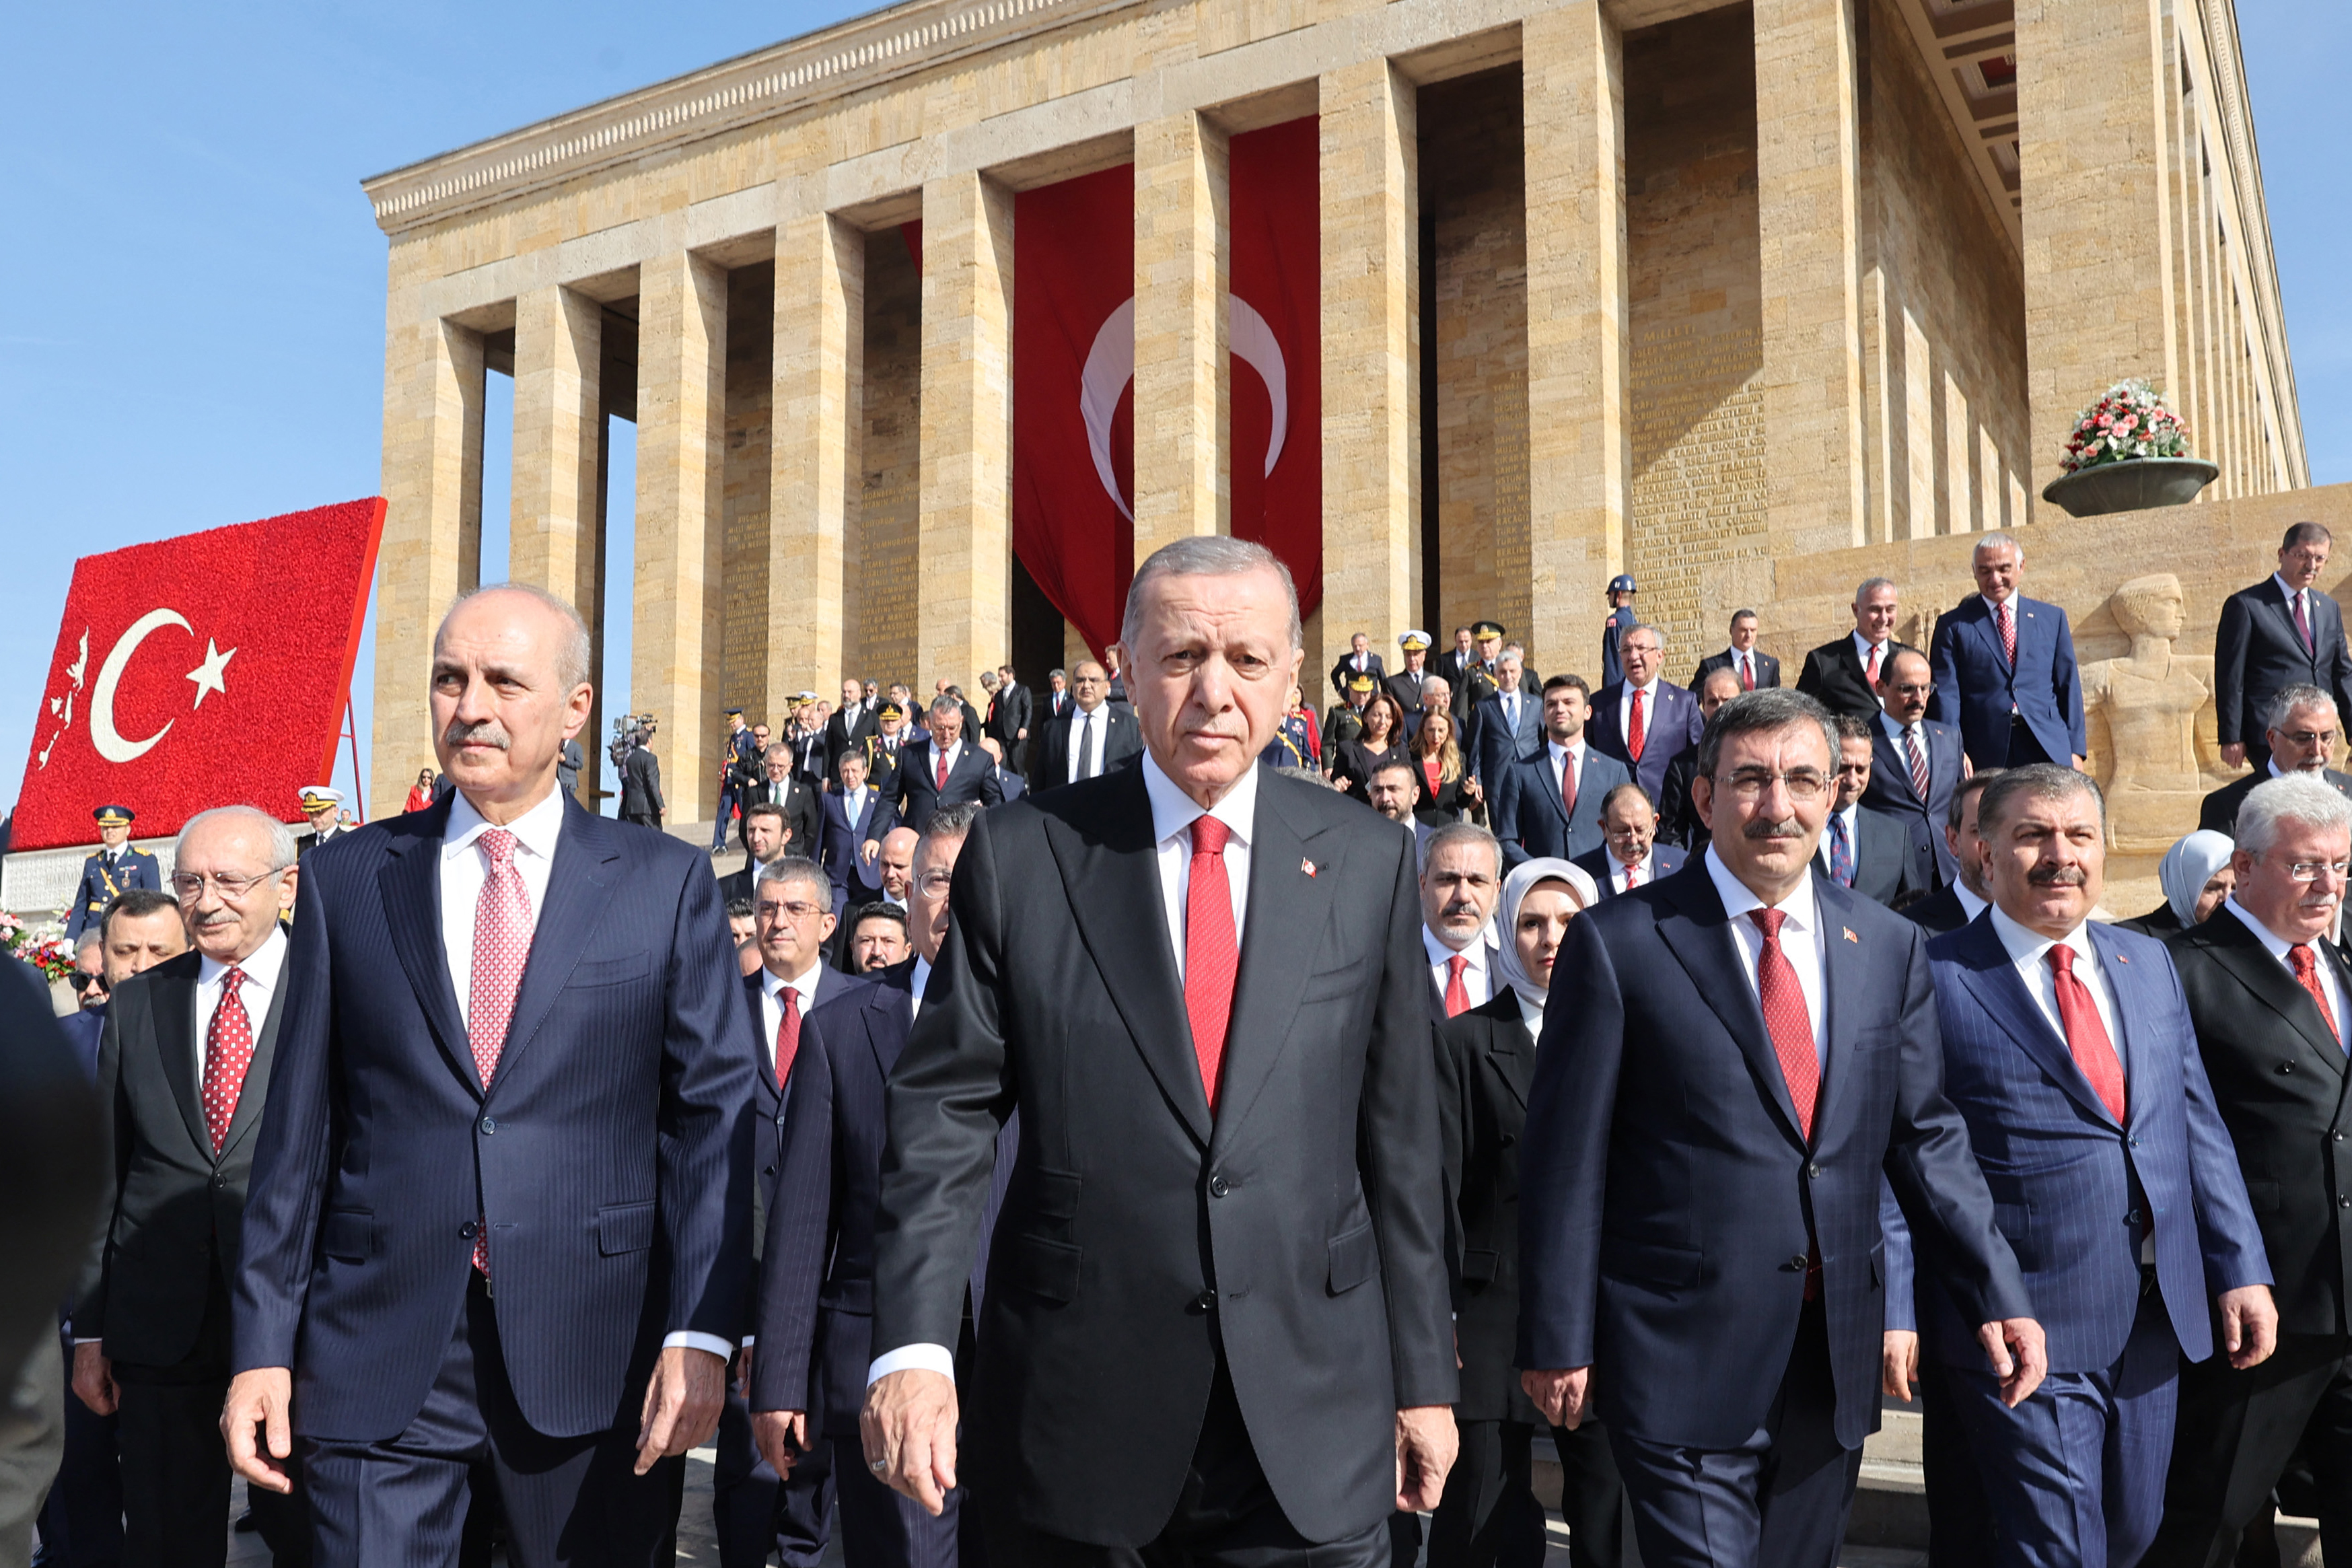 Geschichte - Türkei begeht den 100. Gründungstag der Republik